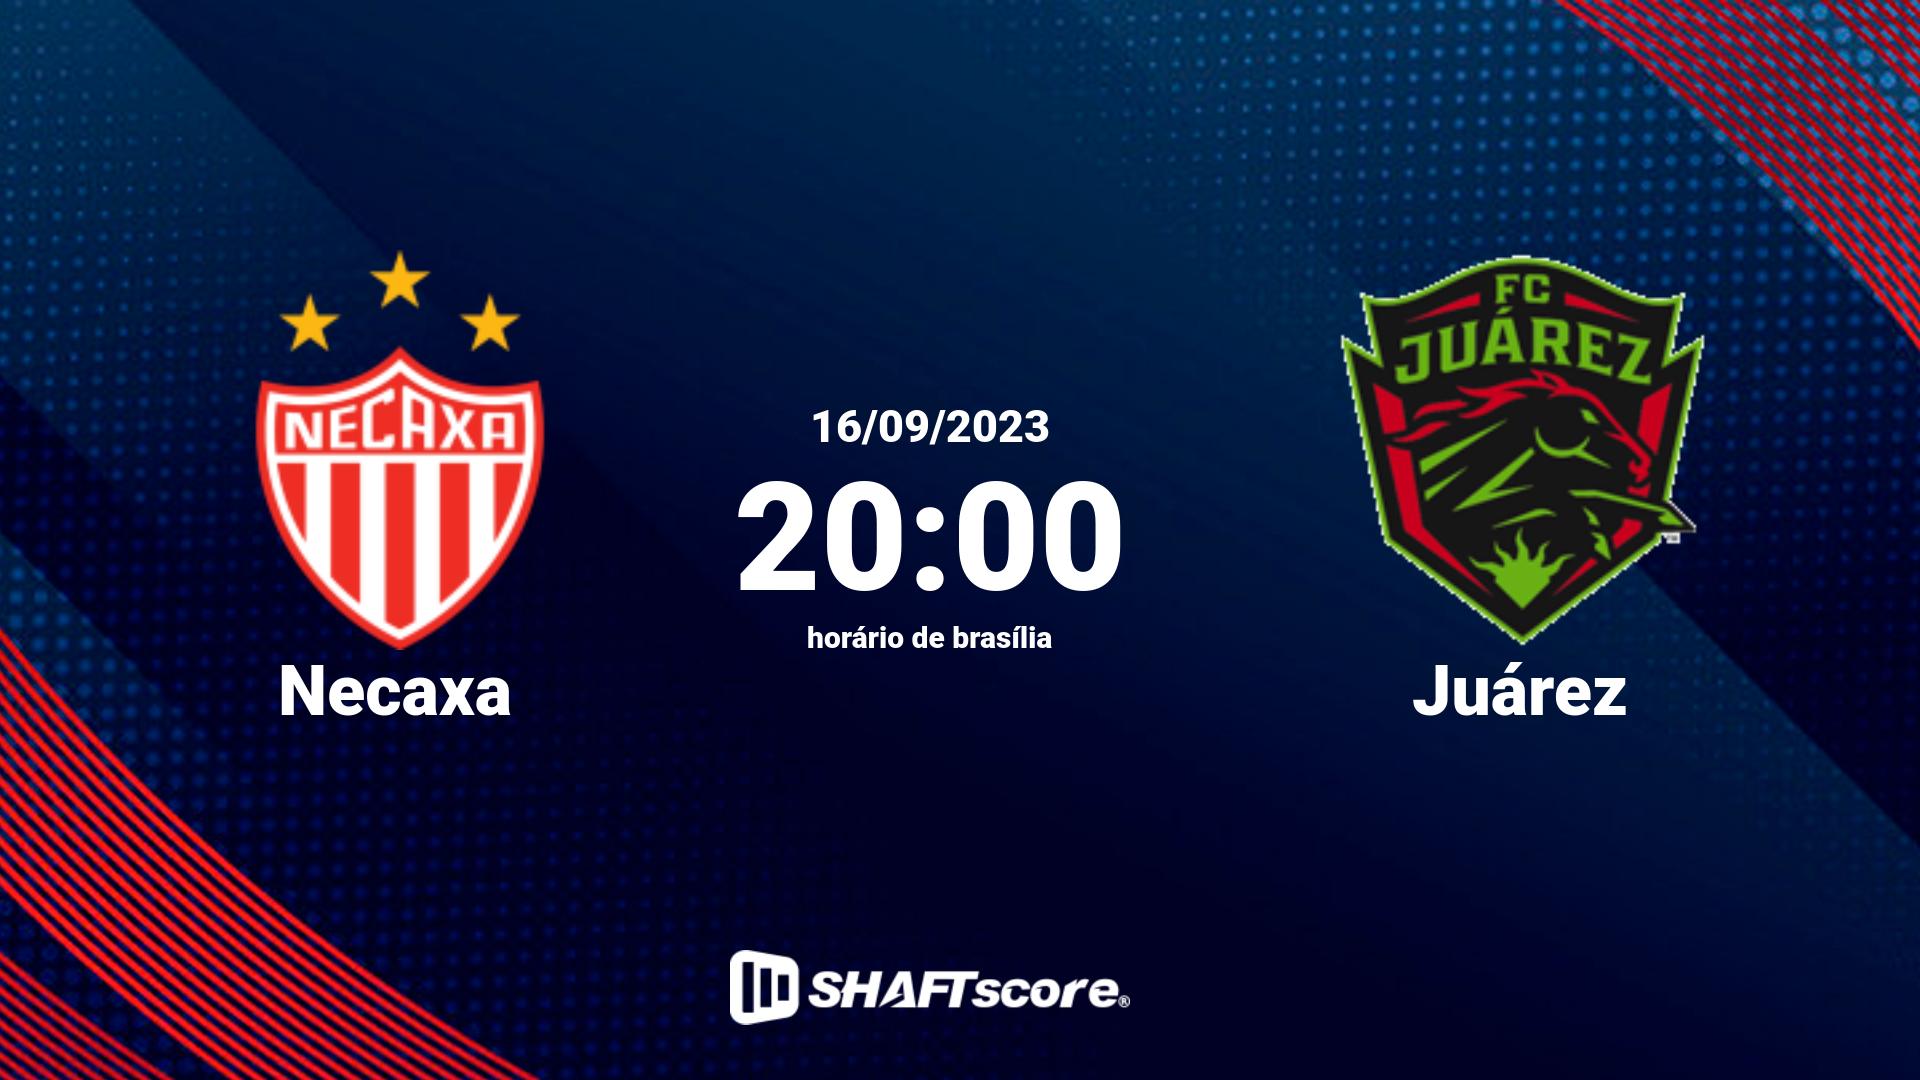 Estatísticas do jogo Necaxa vs Juárez 16.09 20:00